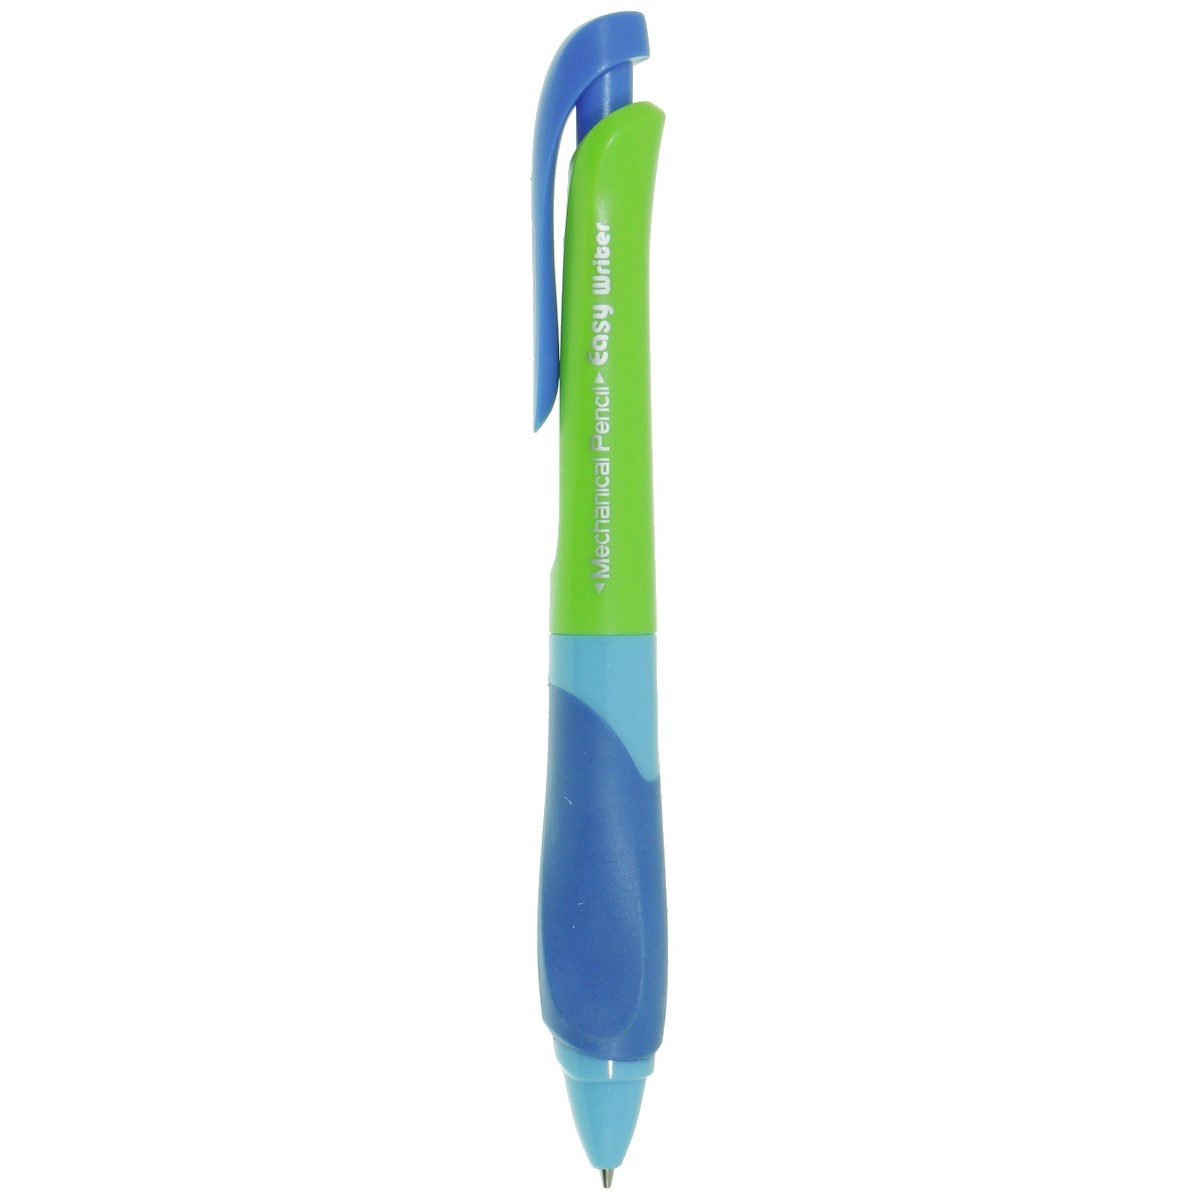 Creion mecanic albastru cu vernil 0 7mm Keyroad KR971506 grip c3151